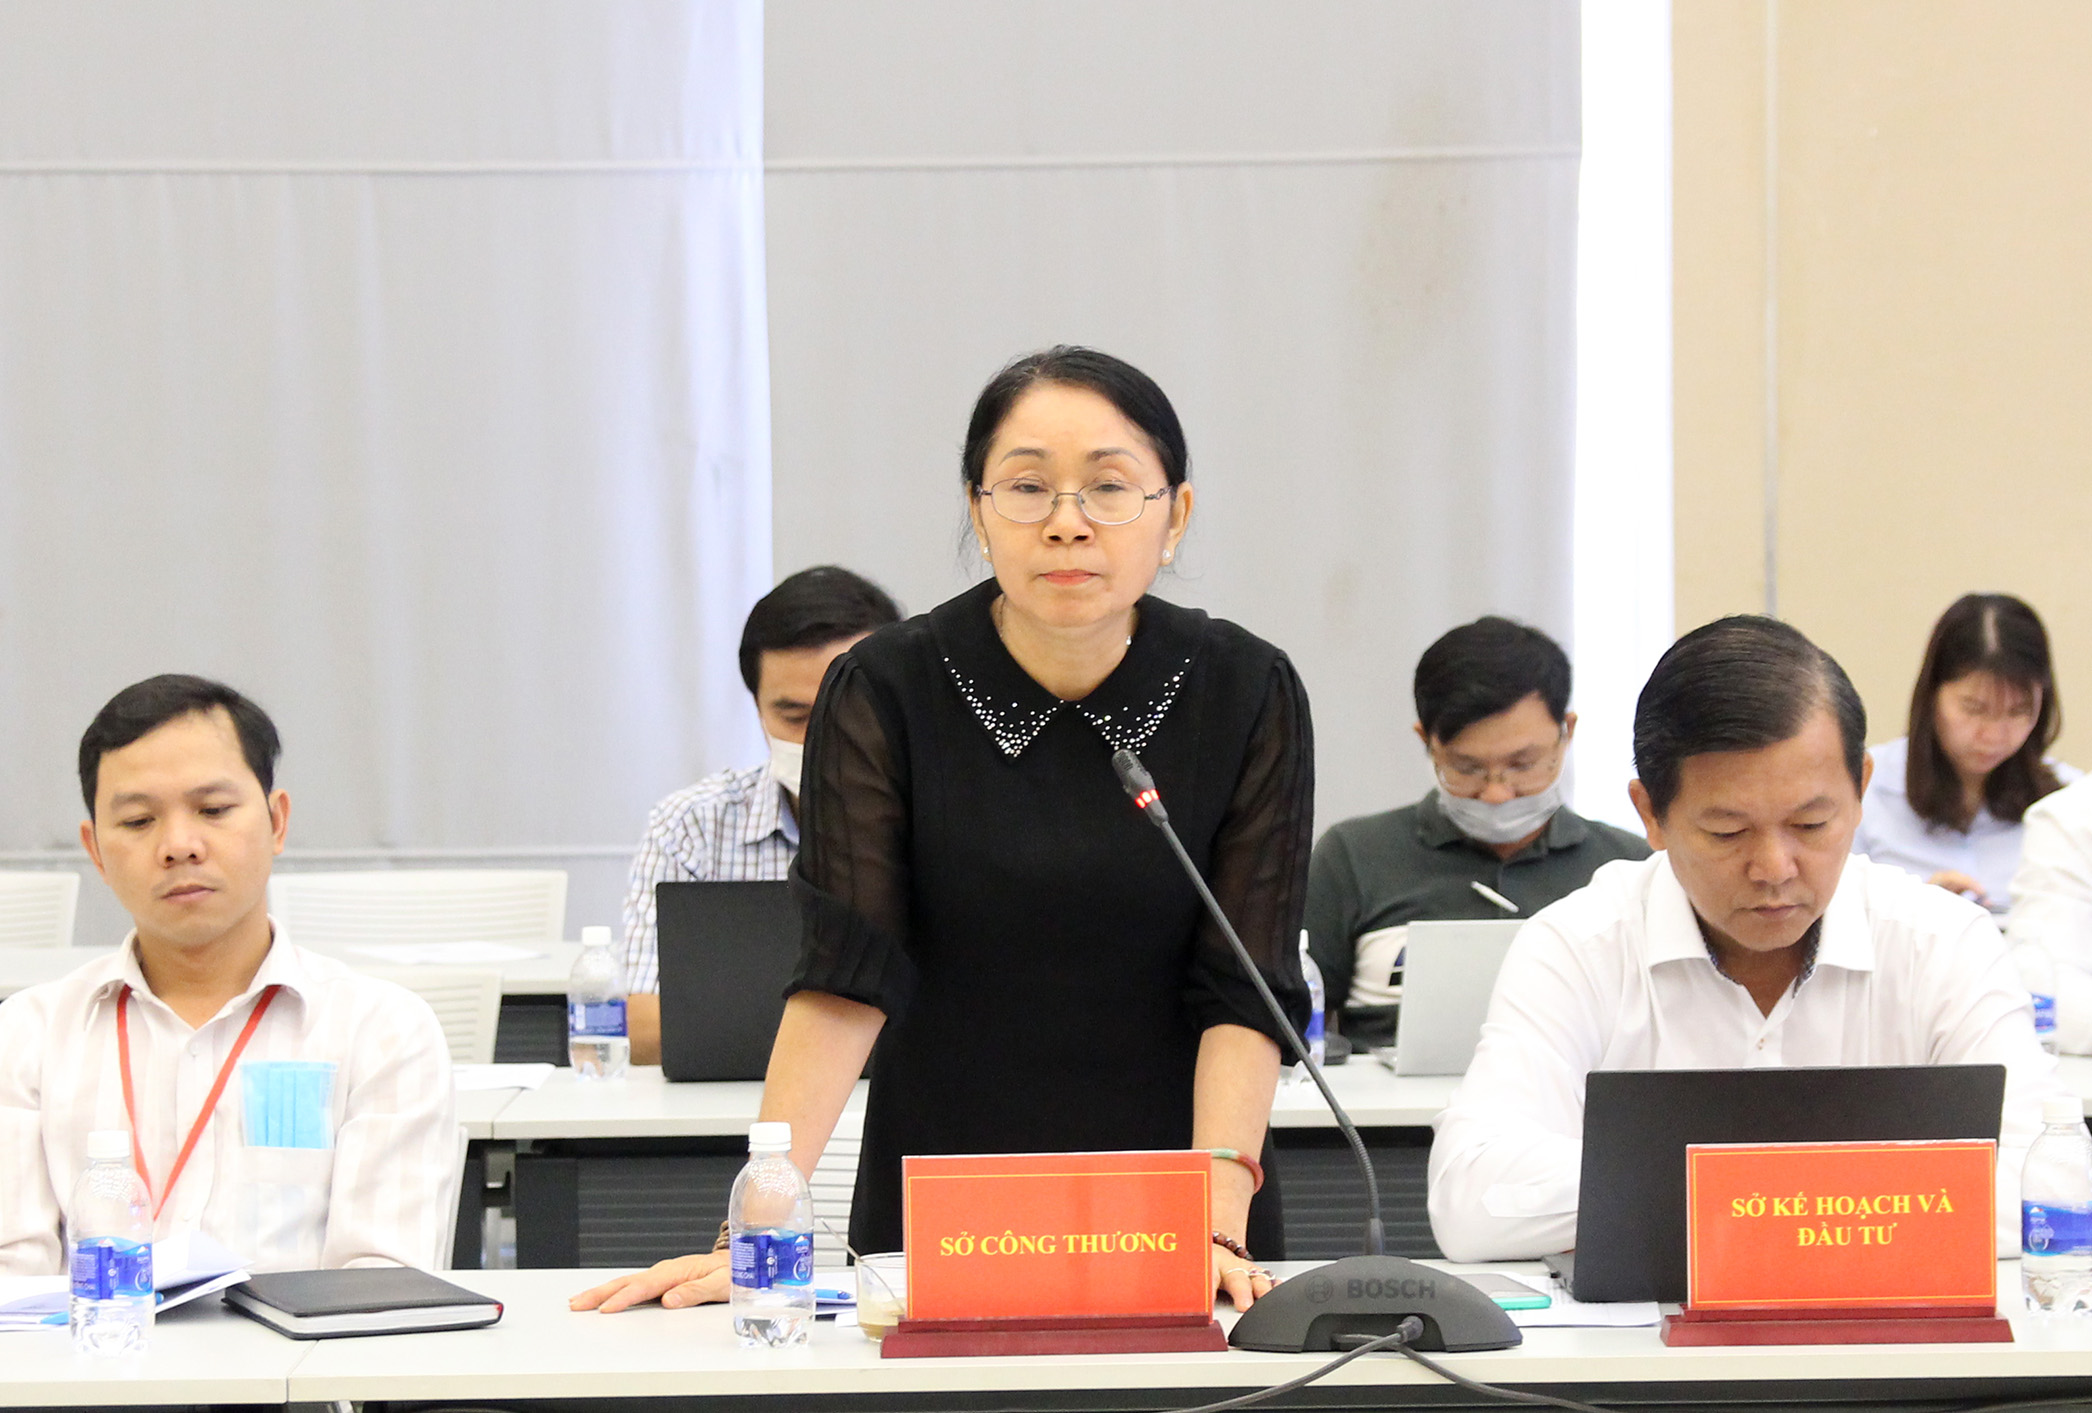 Đồng chí Nguyễn Thanh Hà, Phó Giám đốc Sở Công thương trả lời báo chí tại buổi họp báo (Ảnh: H.Hào)